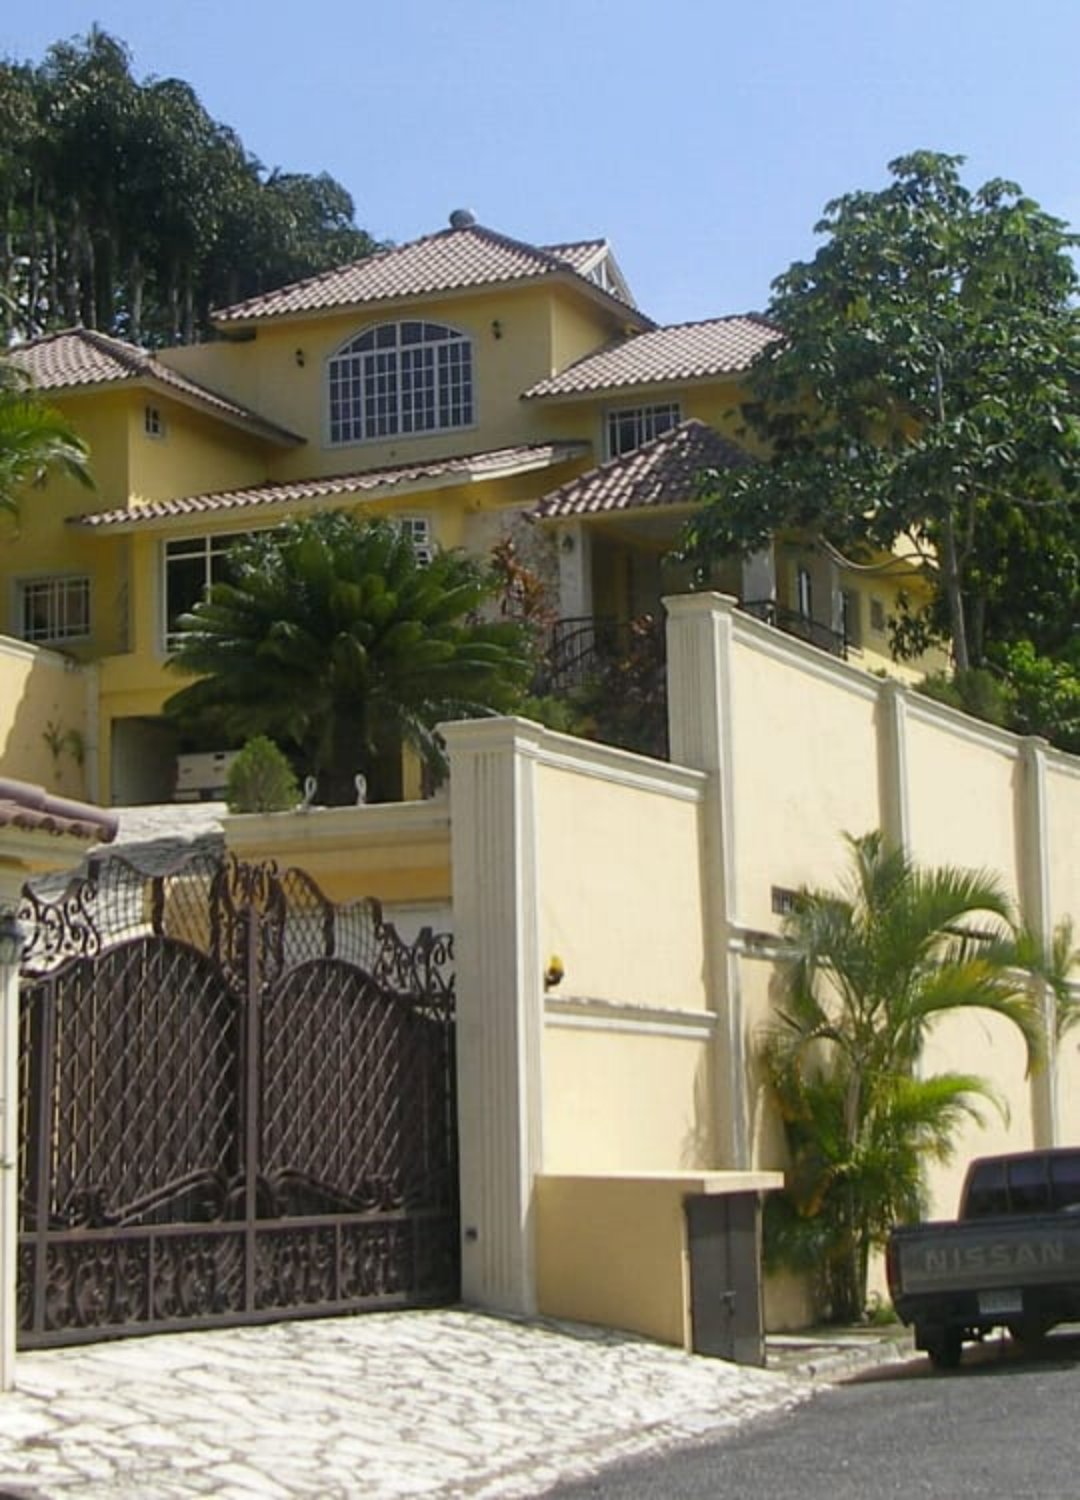 casas vacacionales y villas - ALQUILO CASA AMUEBLADA EN ALTOS DE ARROYO HONDO 11 2